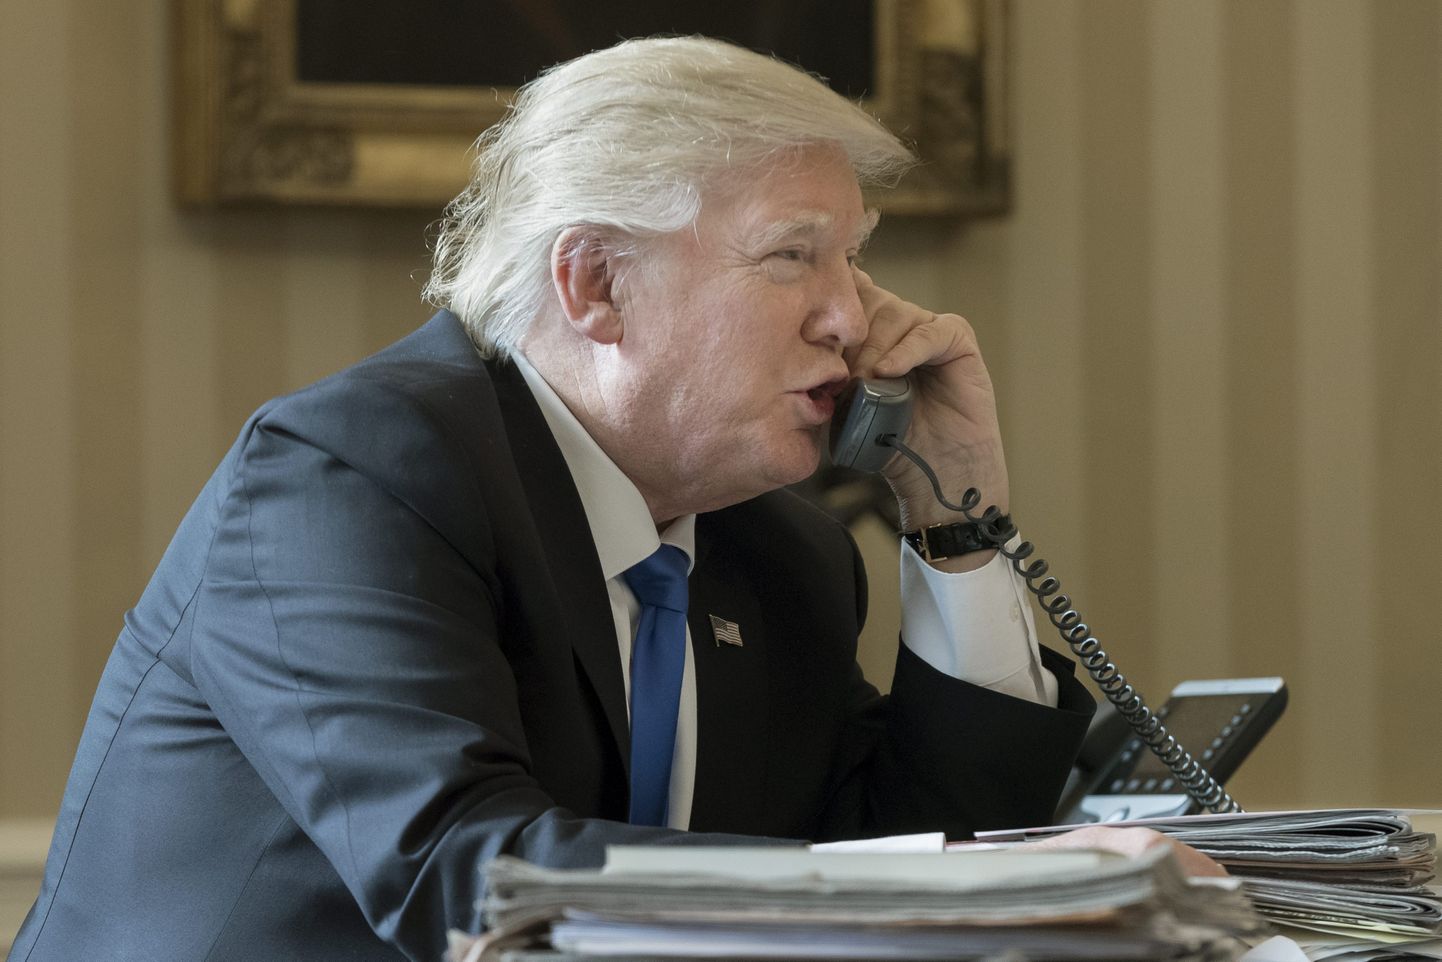 Lisaks Valge Maja turvatud süsteemiga lauatelefonile kasutab president isiklikku mobiiltelefoni.